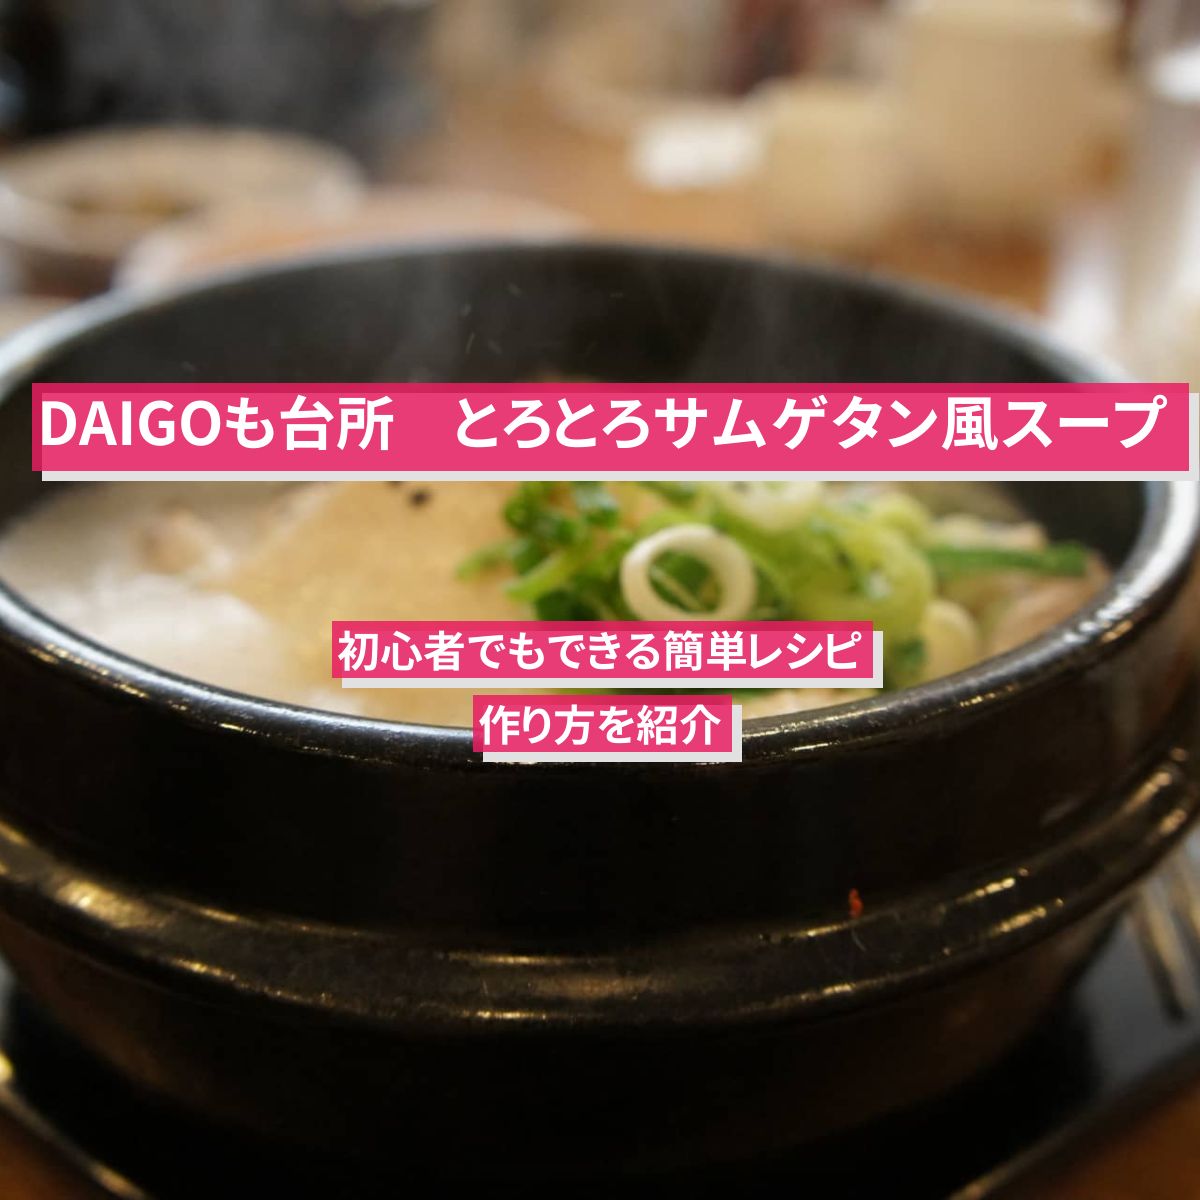 【DAIGOも台所】『とろとろサムゲタン風スープ』のレシピ・作り方を紹介